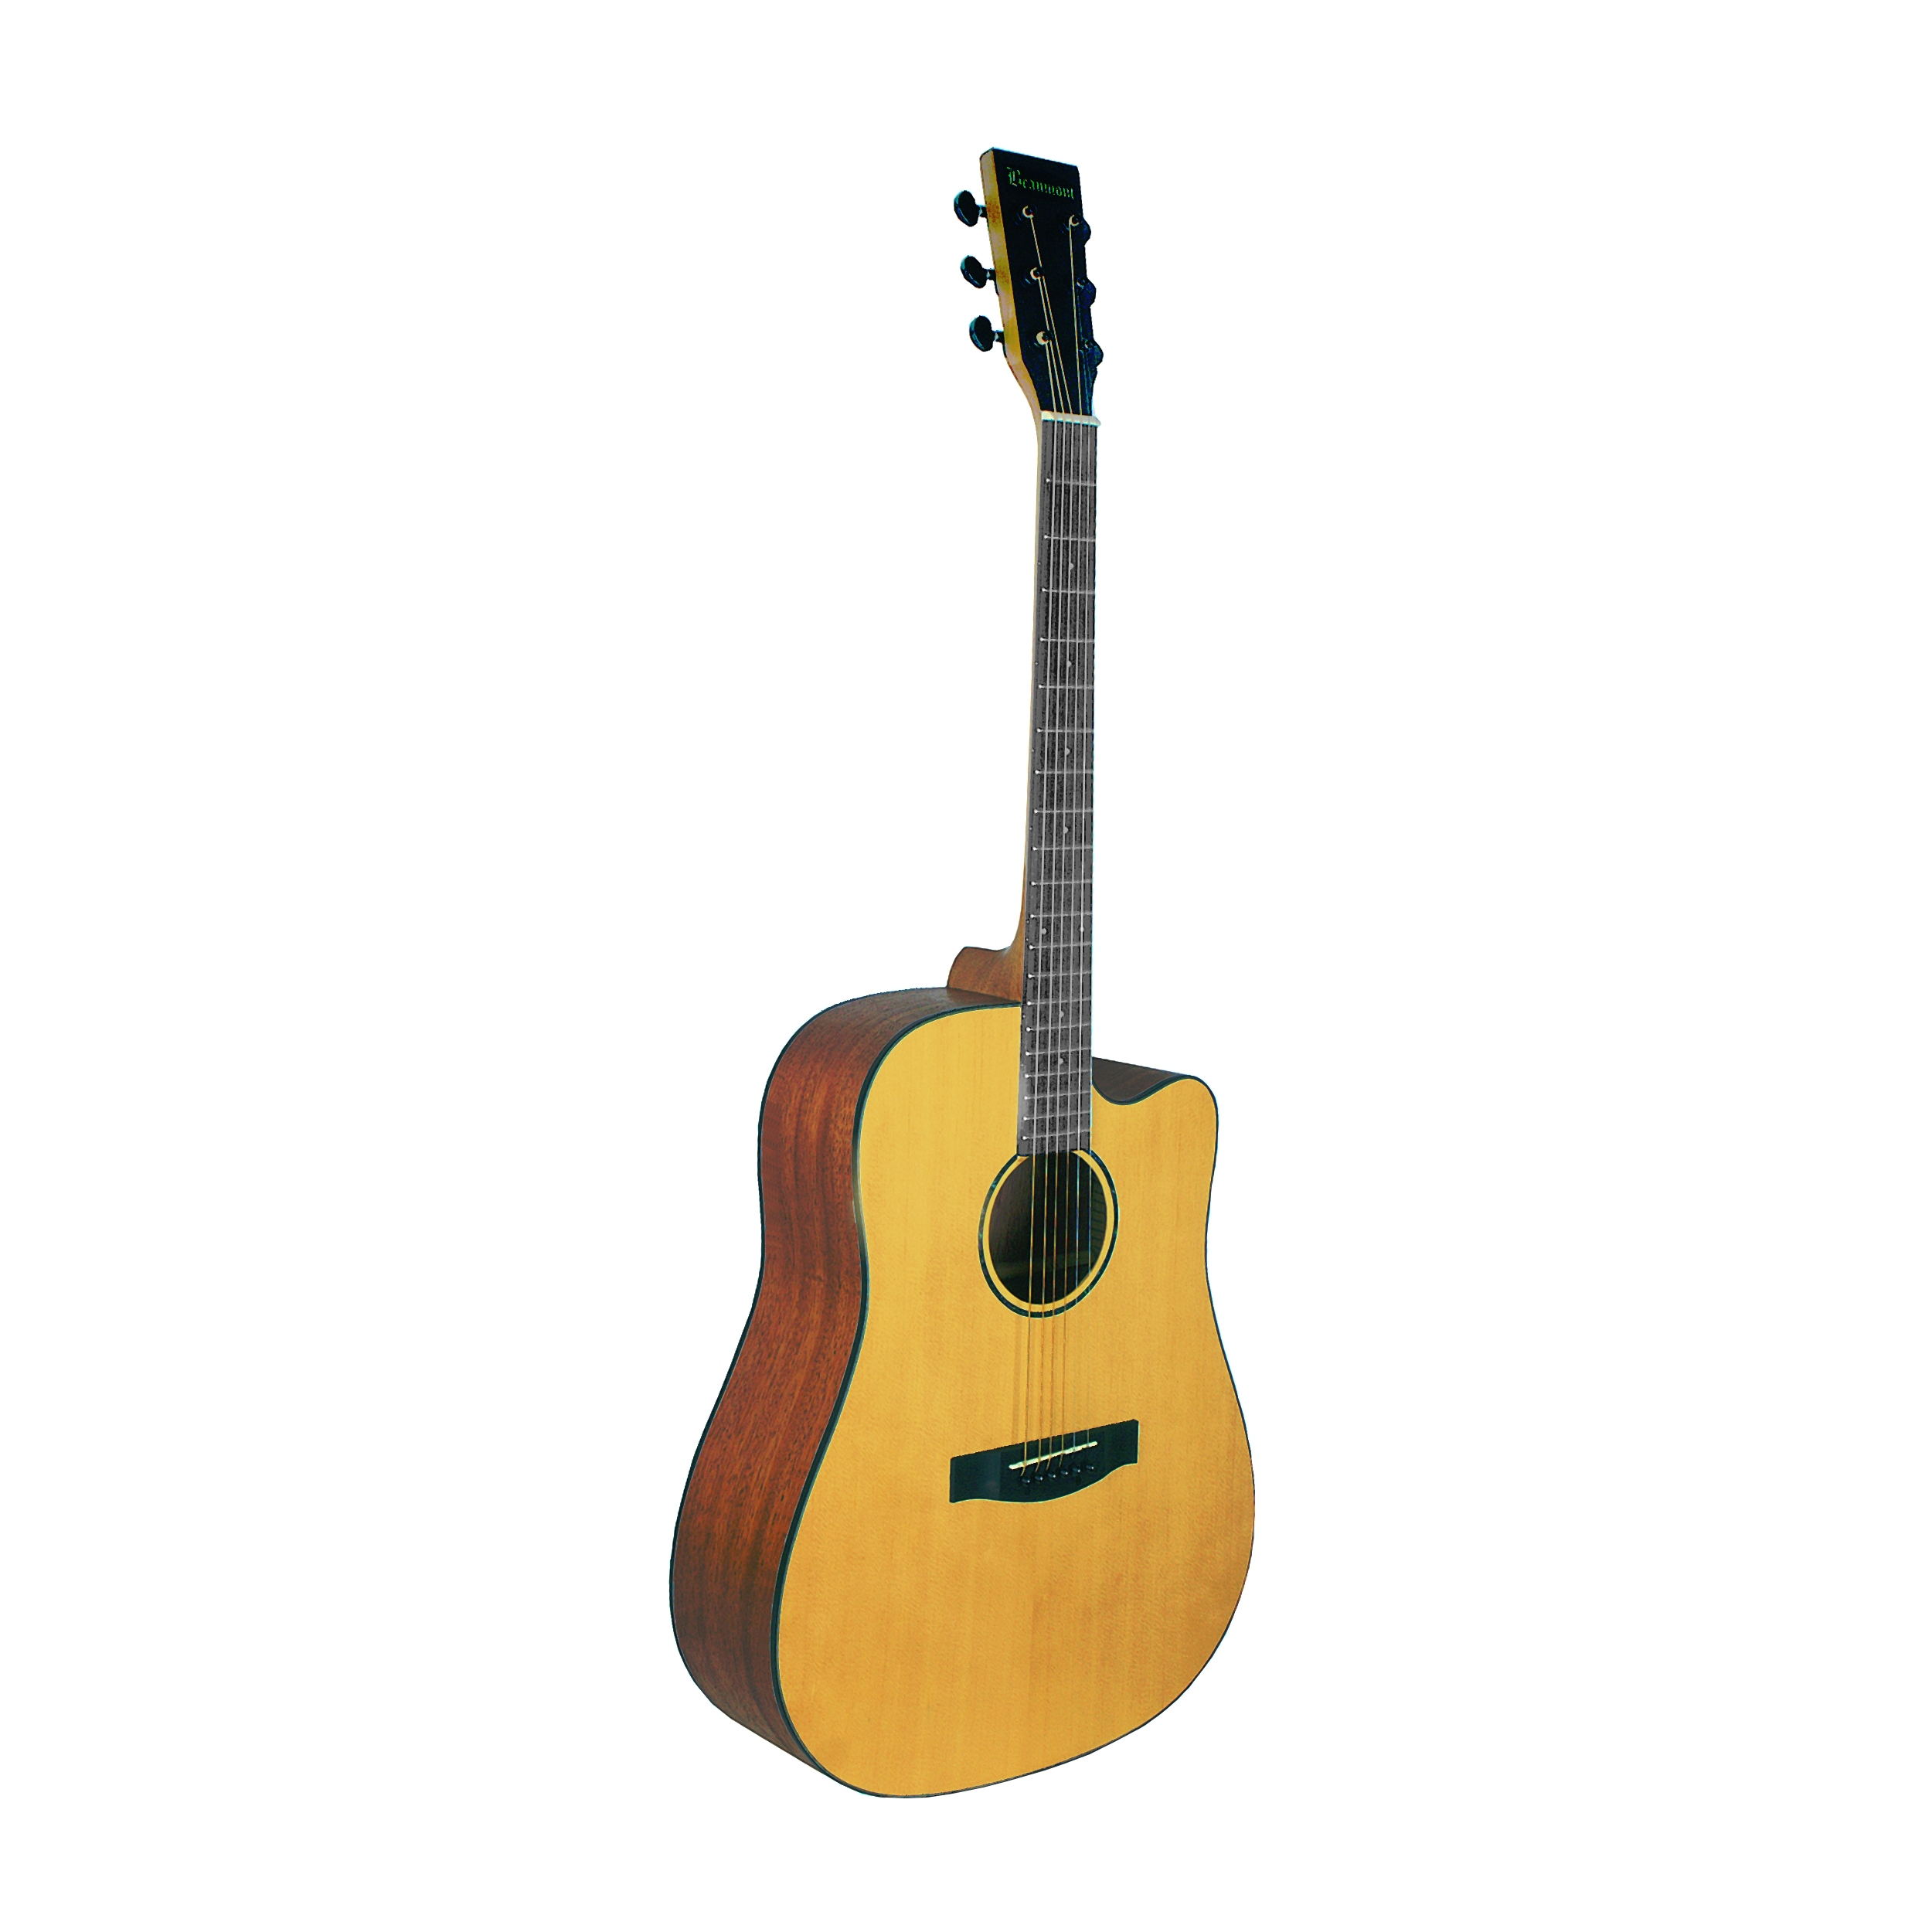 Акустические гитары Beaumont DG142C 34шт комплект аксессуаров для гитары гитара выбирает капо акустическая гитара струны мост булавки костные струны